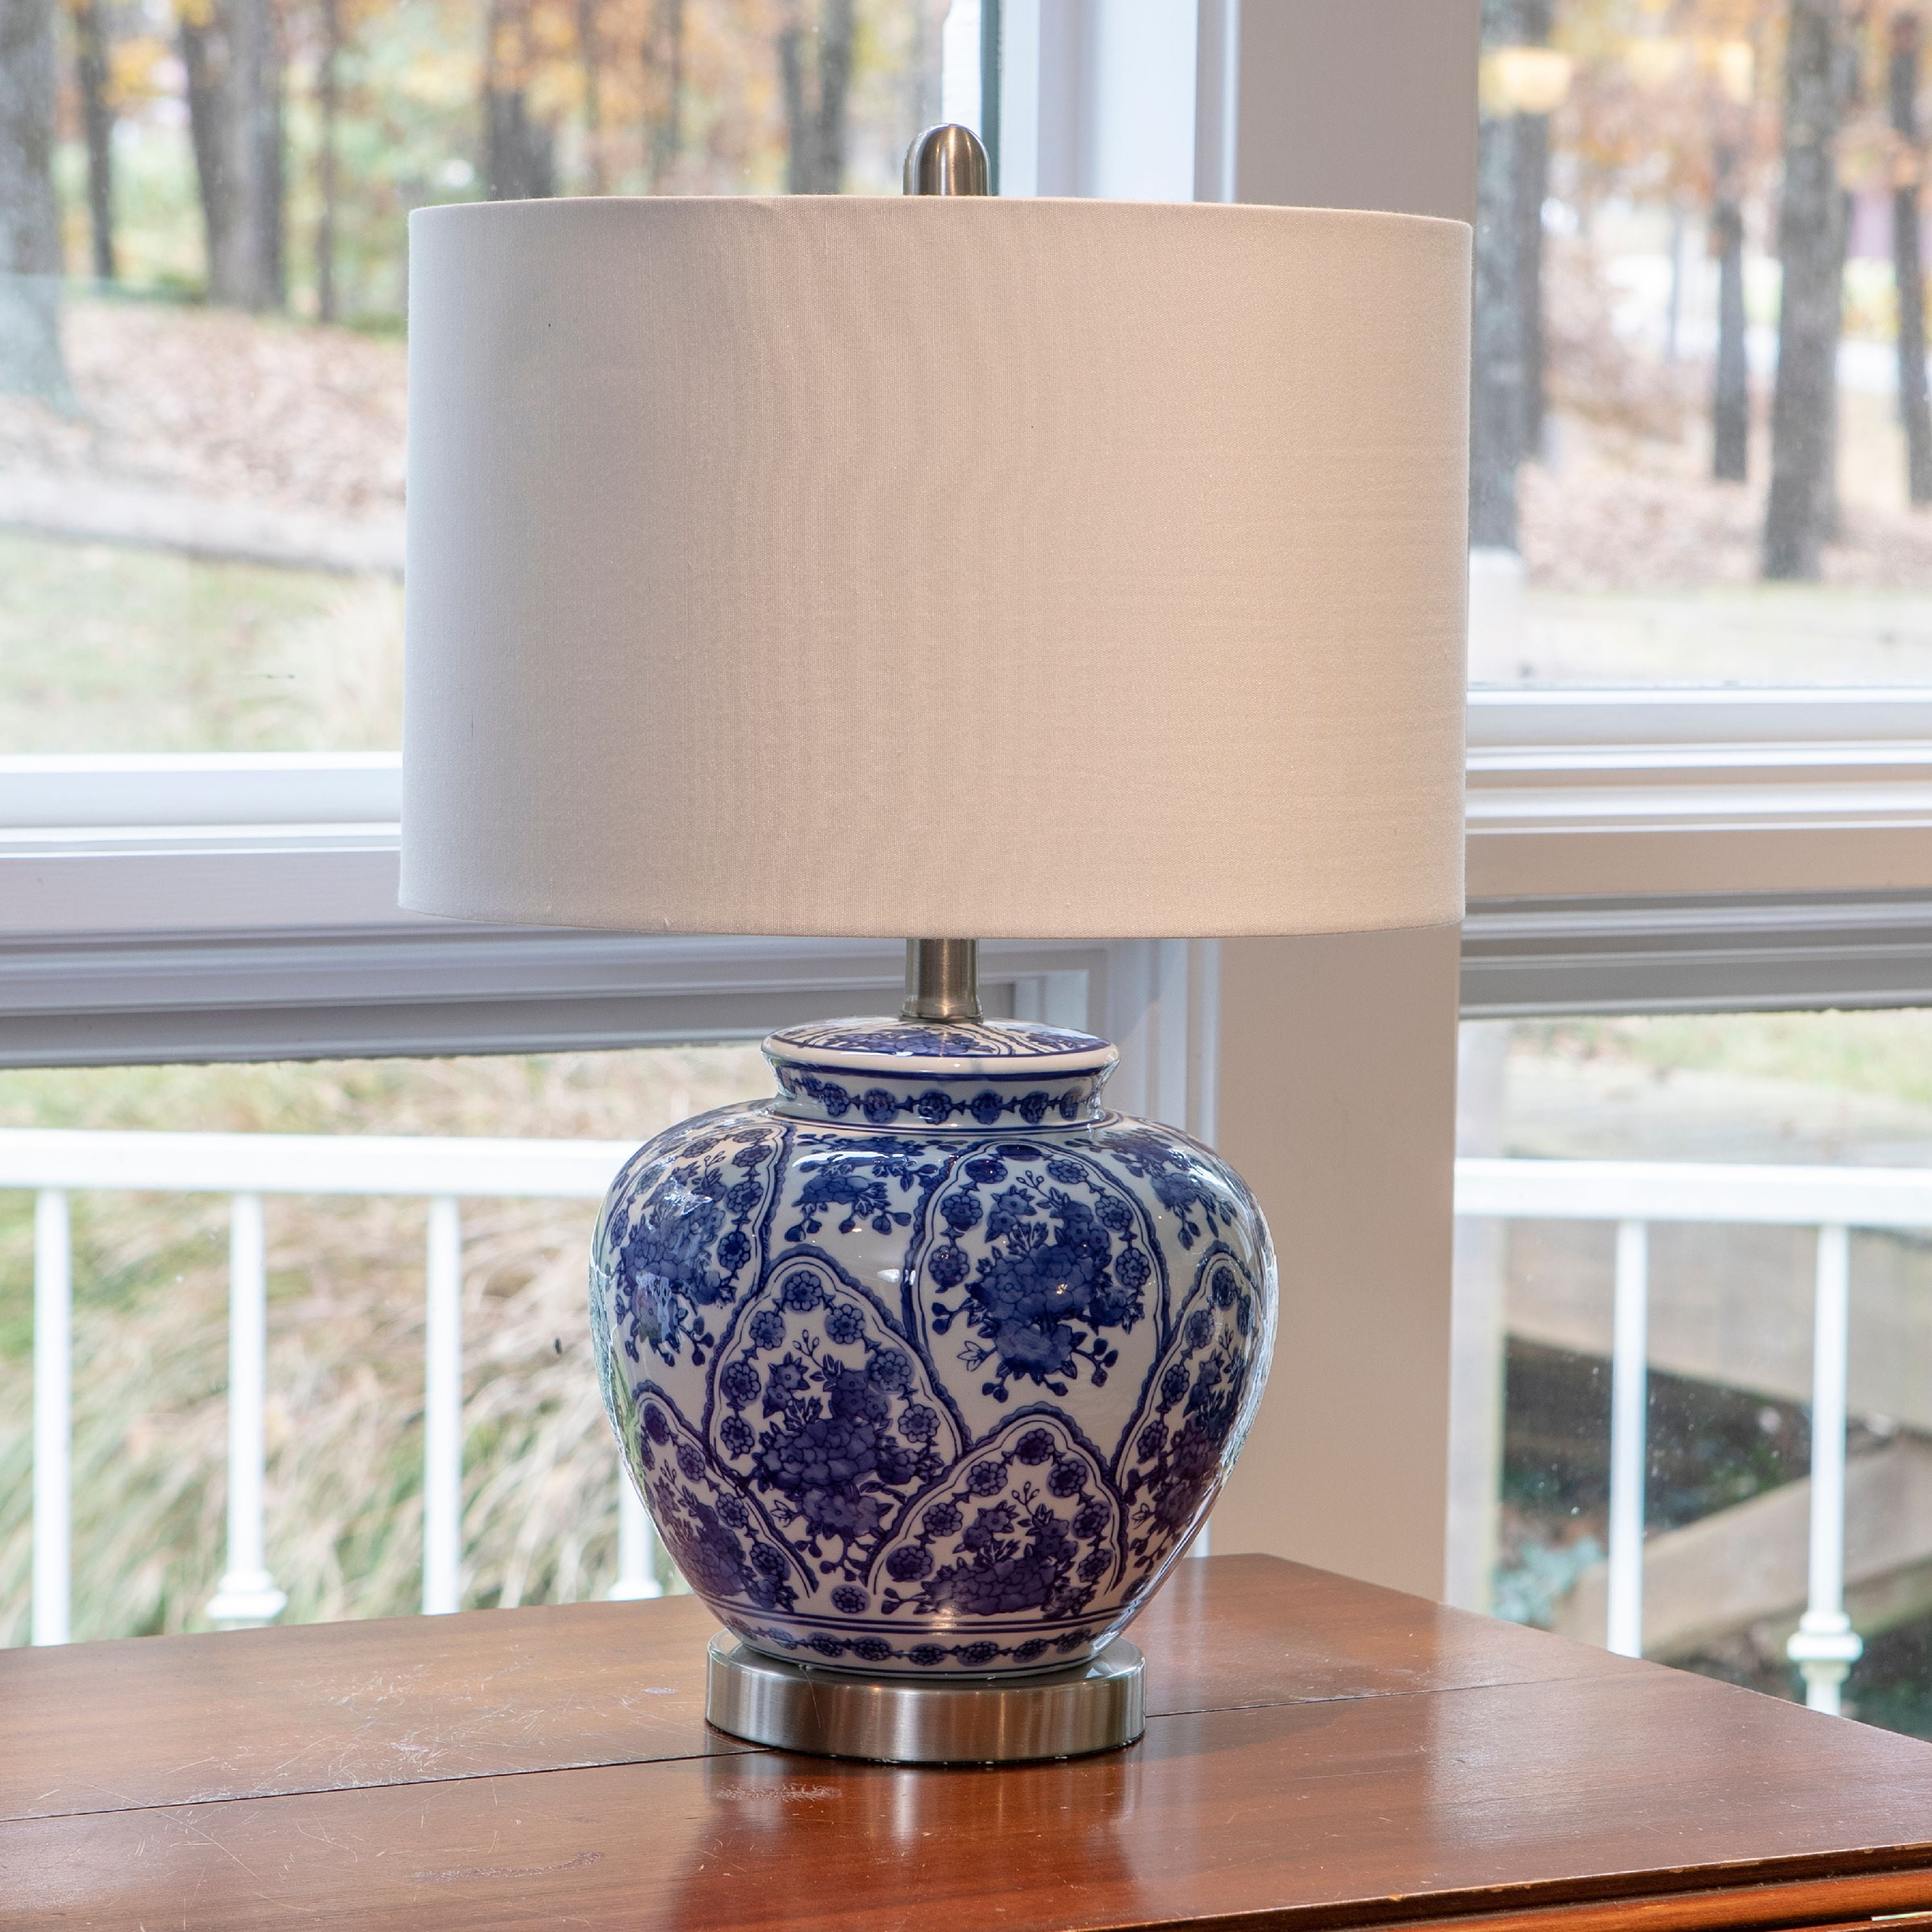 Blue ceramic lamp base